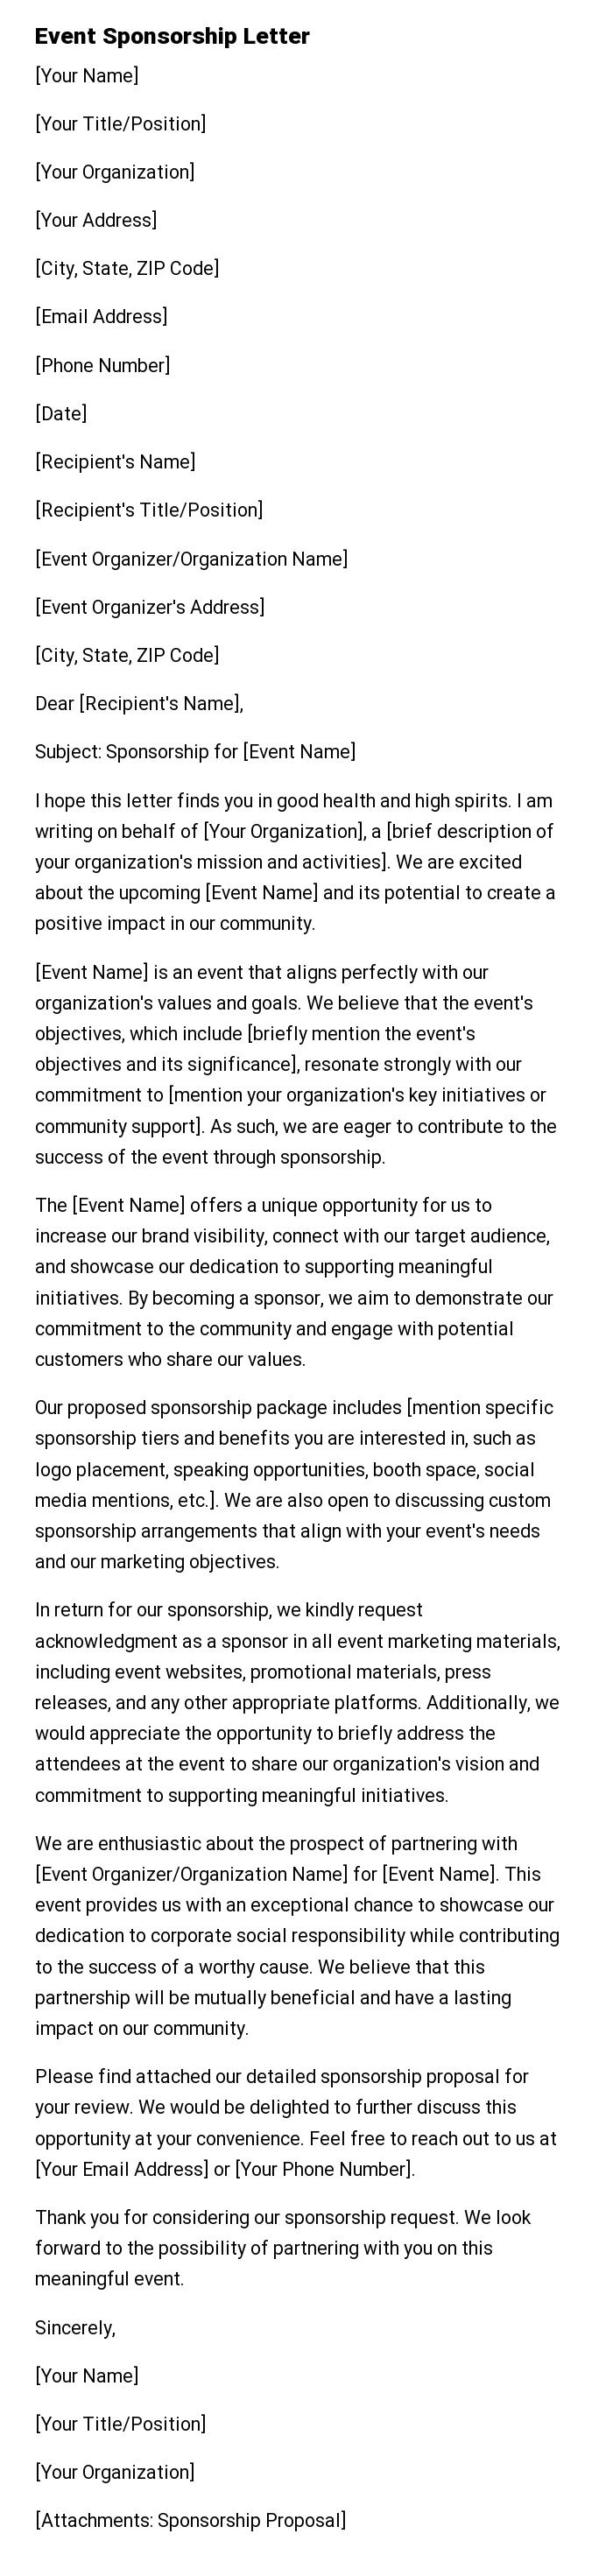 Event Sponsorship Letter